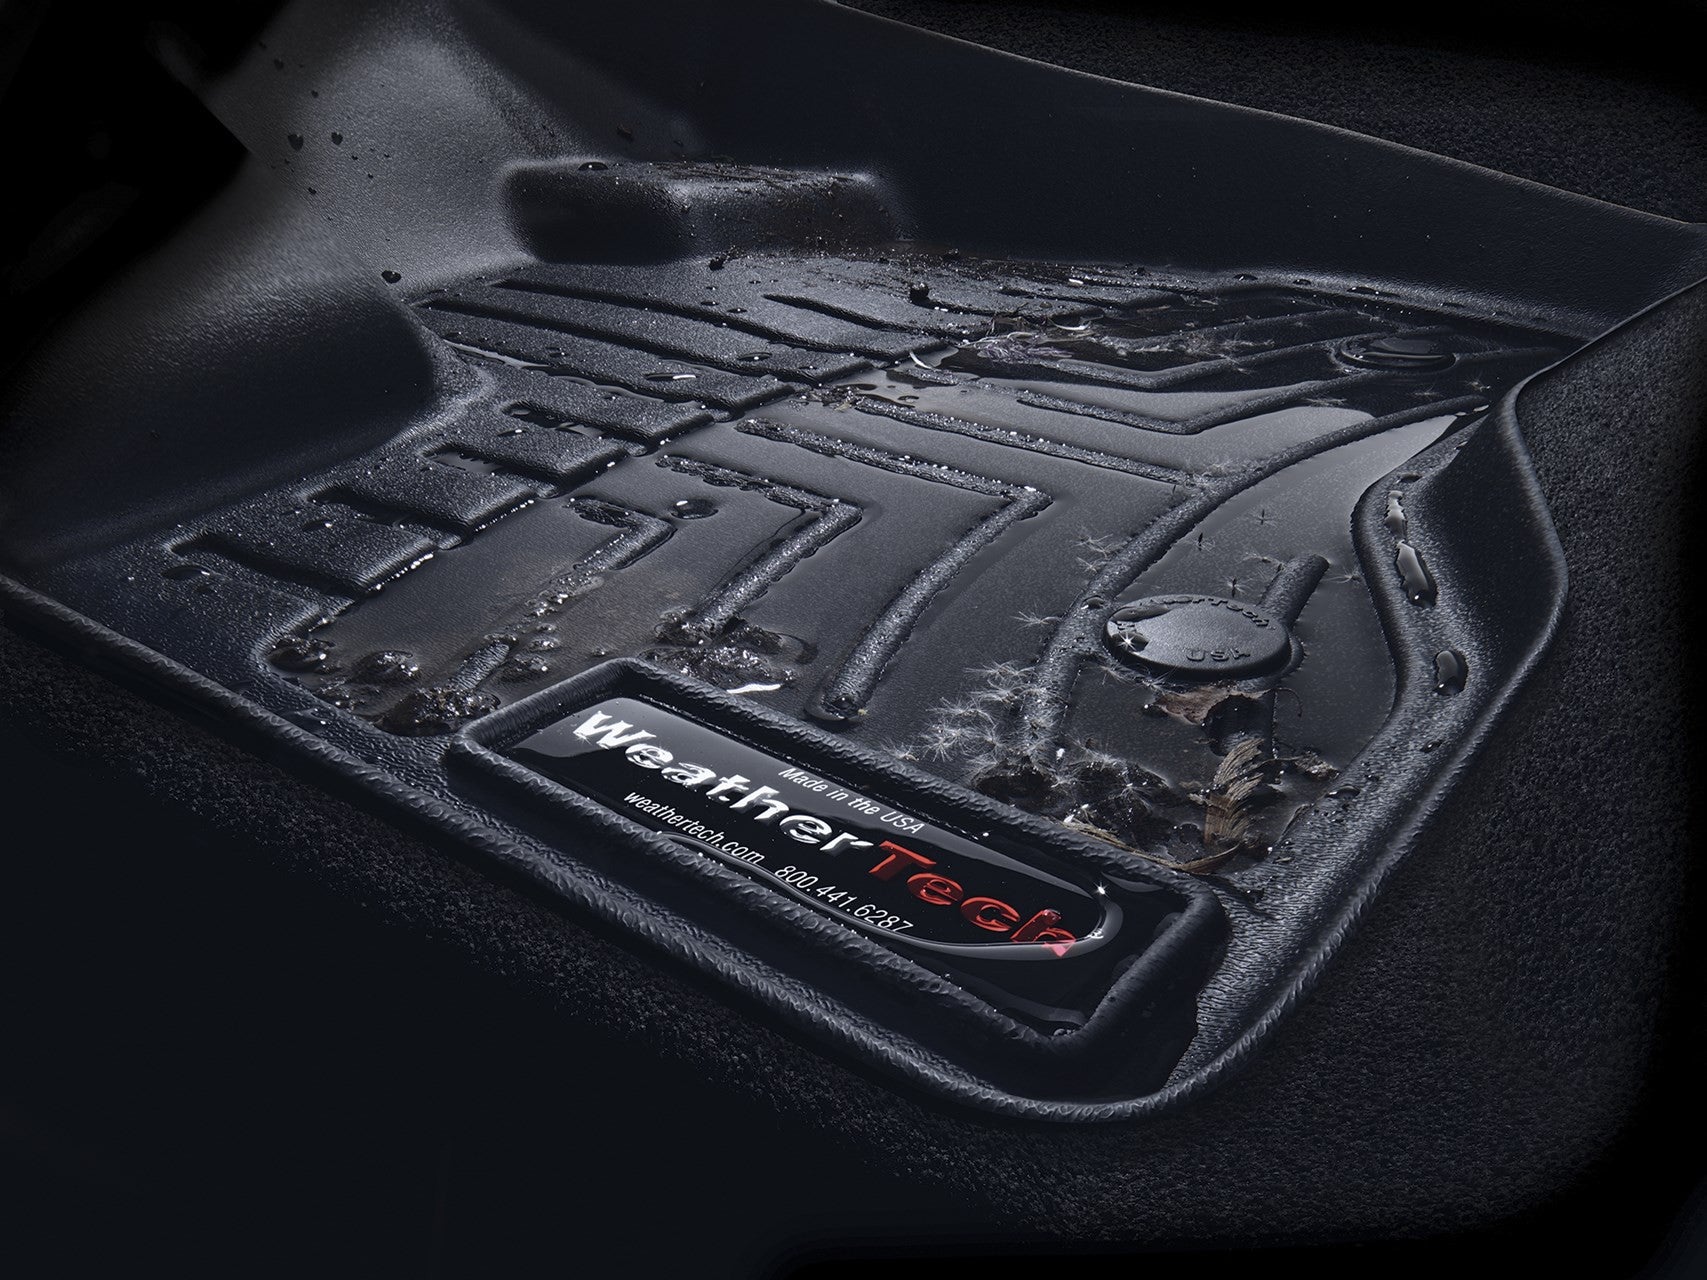 WeatherTech Chevrolet Spark 2013-2015 Black Front & Rear Premium Floor Mats FloorLiner 44528-1-2 